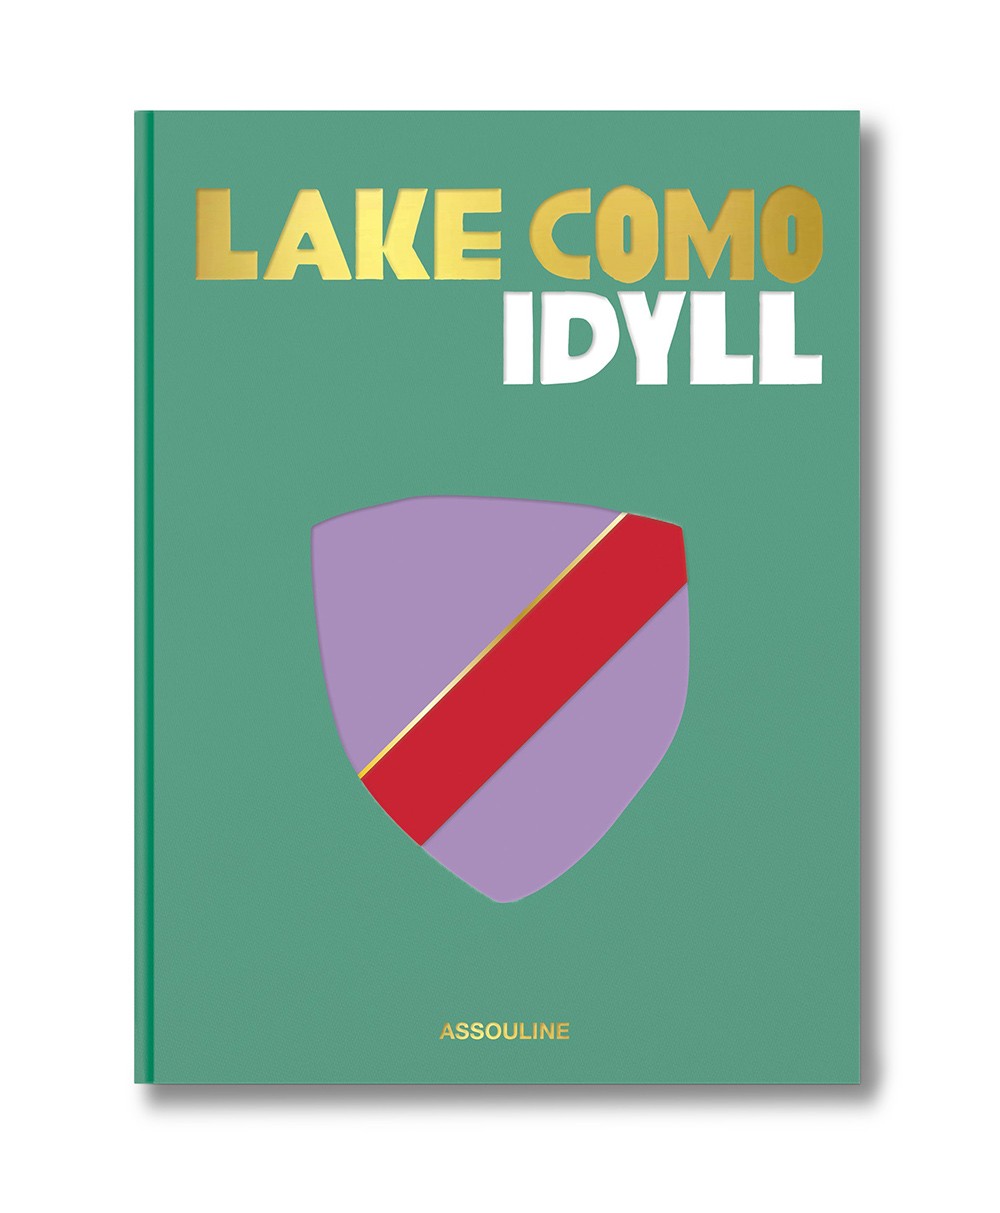 Produktbild des Coffee Table Books „Lake Como Idyll“ von Assouline im RAUM concept store 